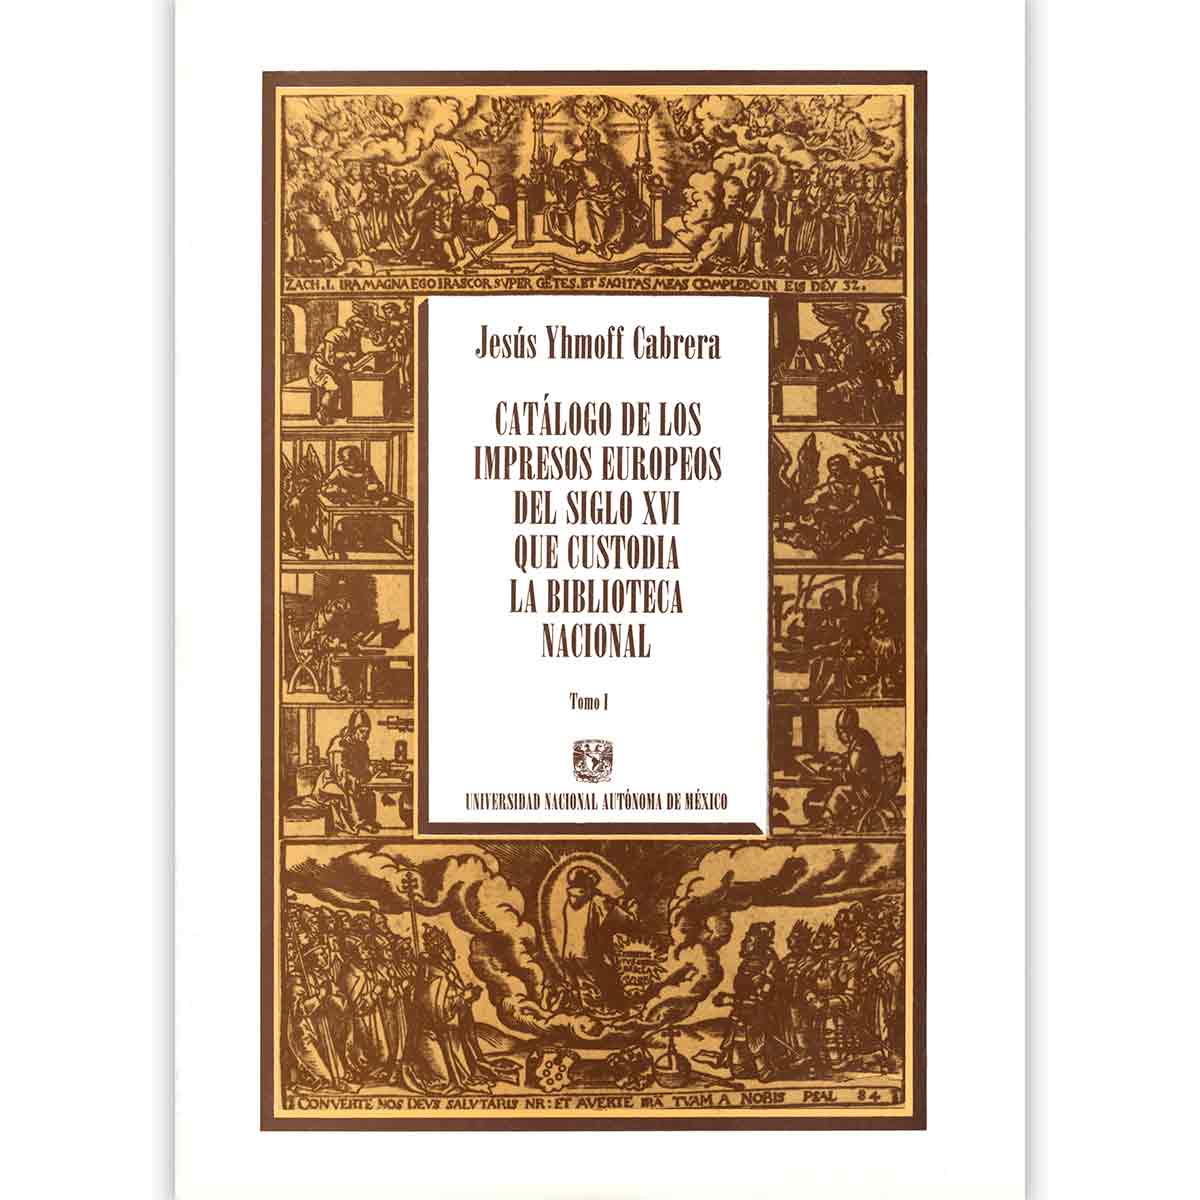 CATÁLOGO DE LOS IMPRESOS EUROPEOS DEL SIGLO XVI QUE CUSTODIA LA BIBLIOTECA NACIONAL. TOMO I